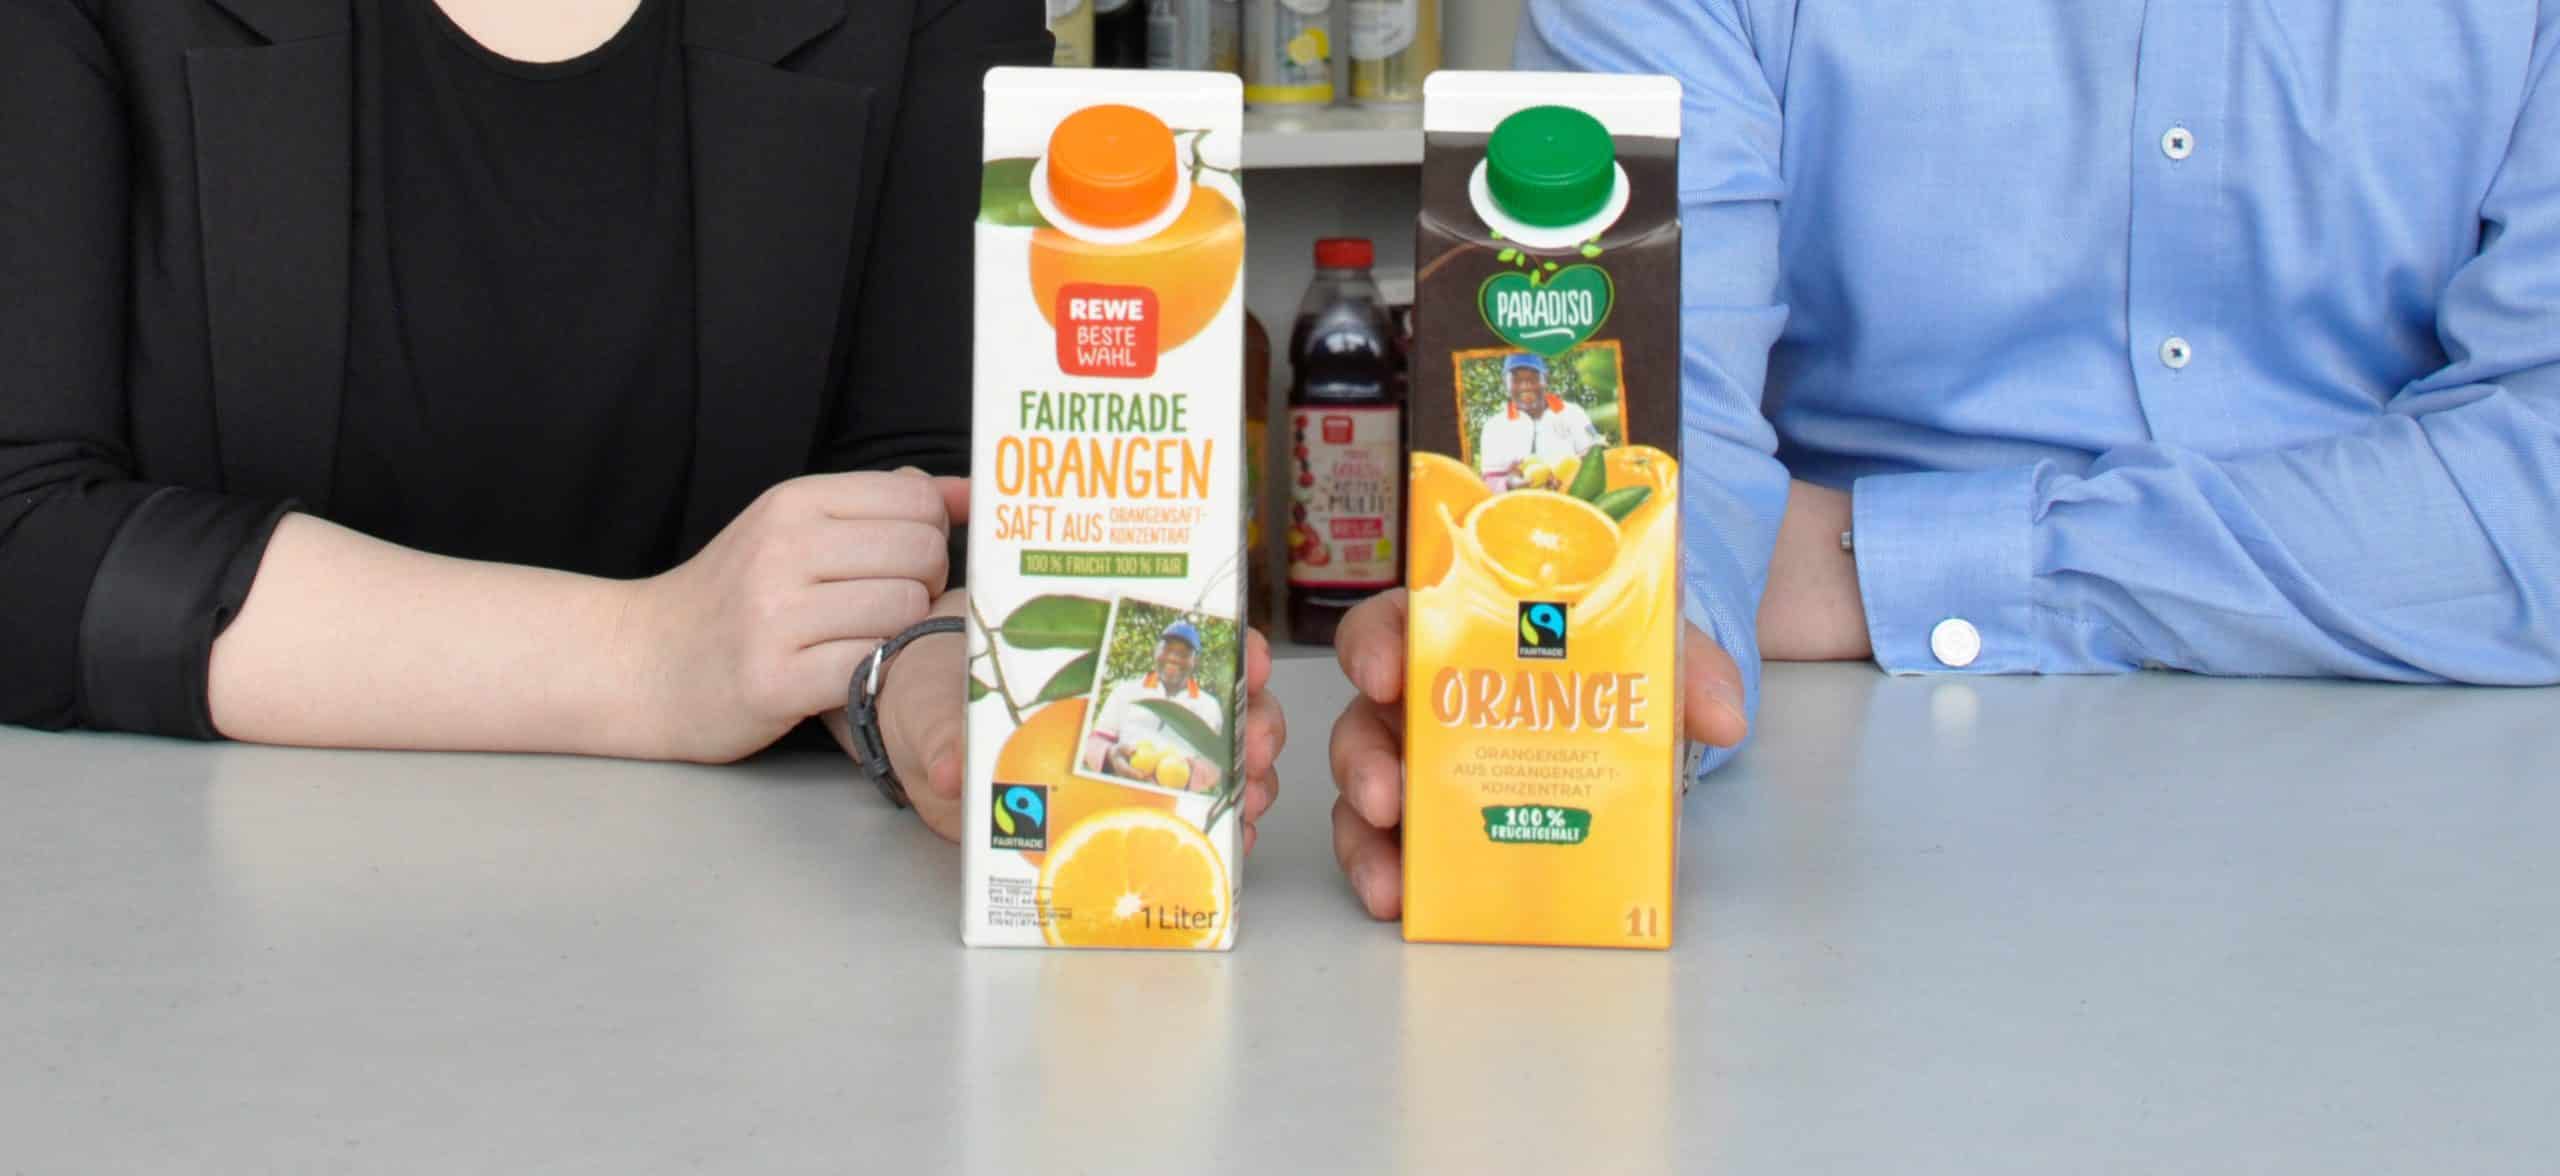 Fairtrade Orangensaft von REWE und PENNY